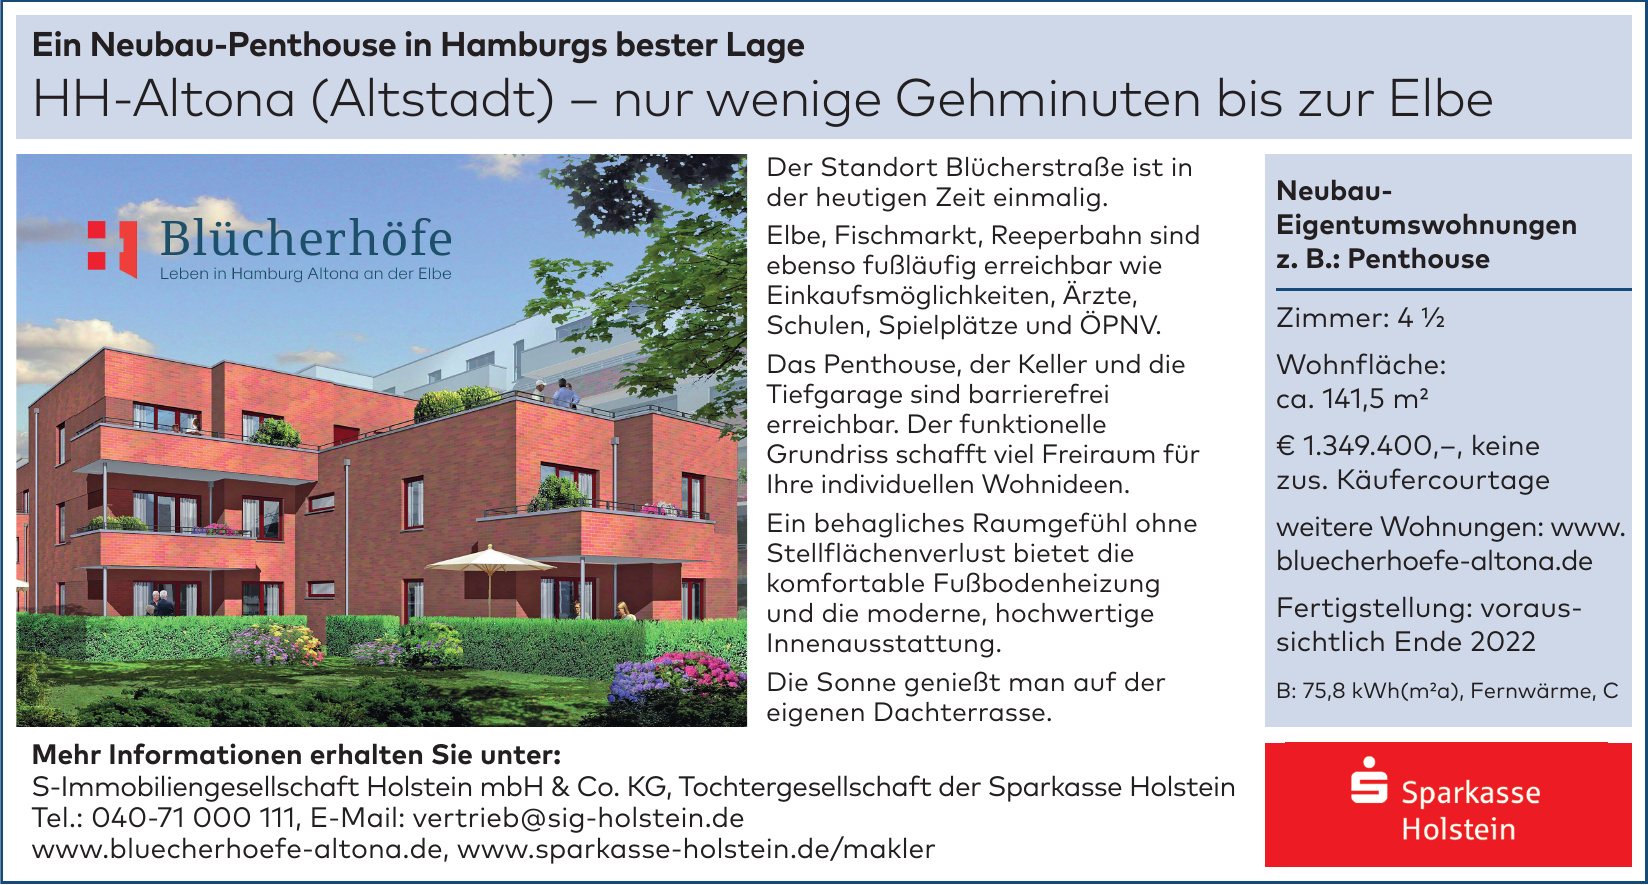 S-Immobiliengesellschaft Holstein mbH & Co. KG, Tochtergesellschaft der Sparkasse Holstein